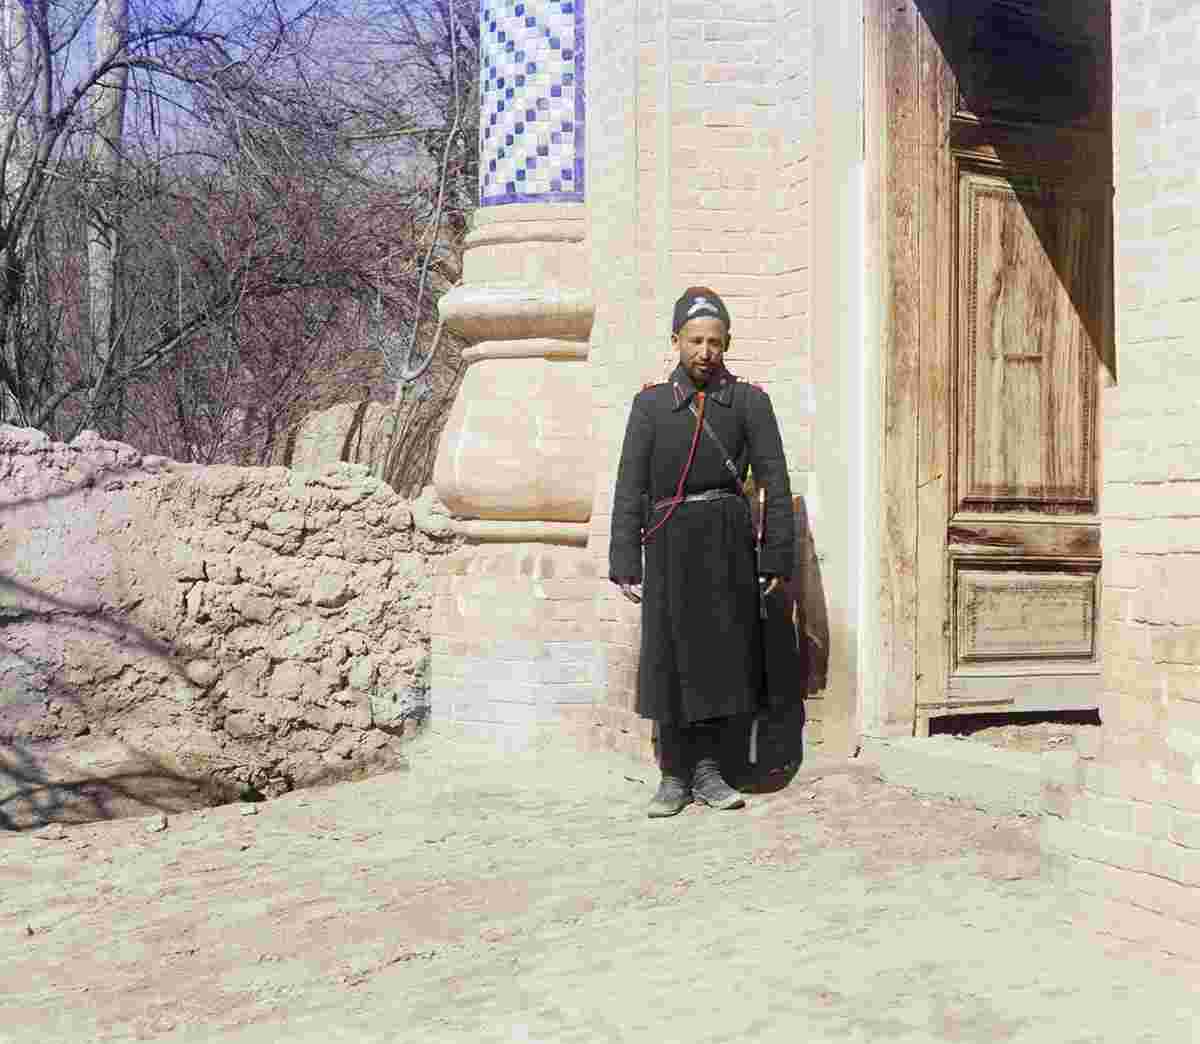 Samarkand. City Police, 1905